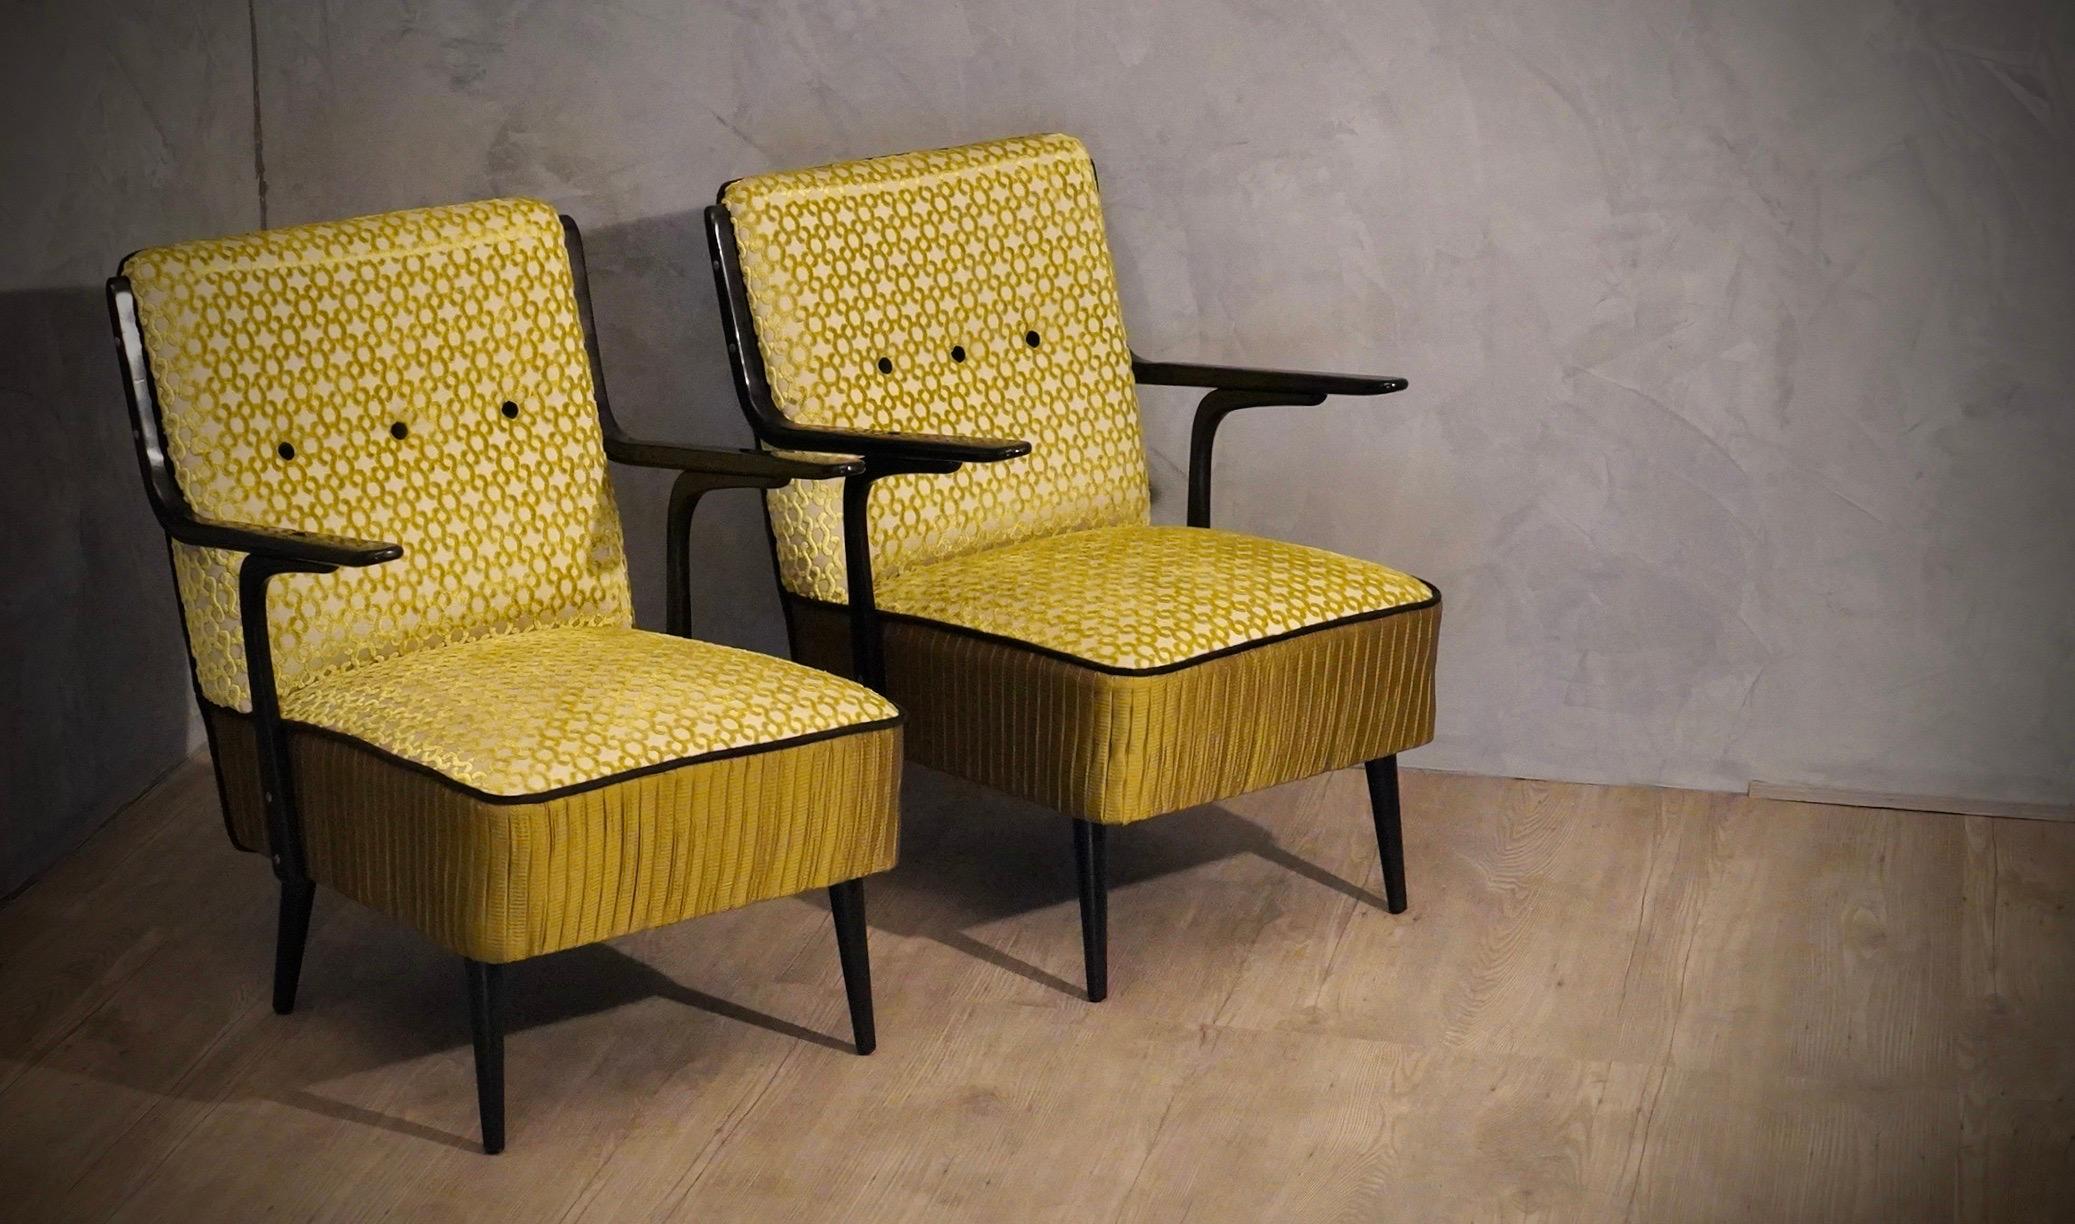 Paar sehr sauber und architektonisch in seinem Design Sessel. Unser Polstermöbelatelier hat den Sessel sorgfältig restauriert und eine Kombination von Stoffen ausgewählt, um die Schönheit des Sessels zu unterstreichen.

Sitz und Rückenlehne sind mit